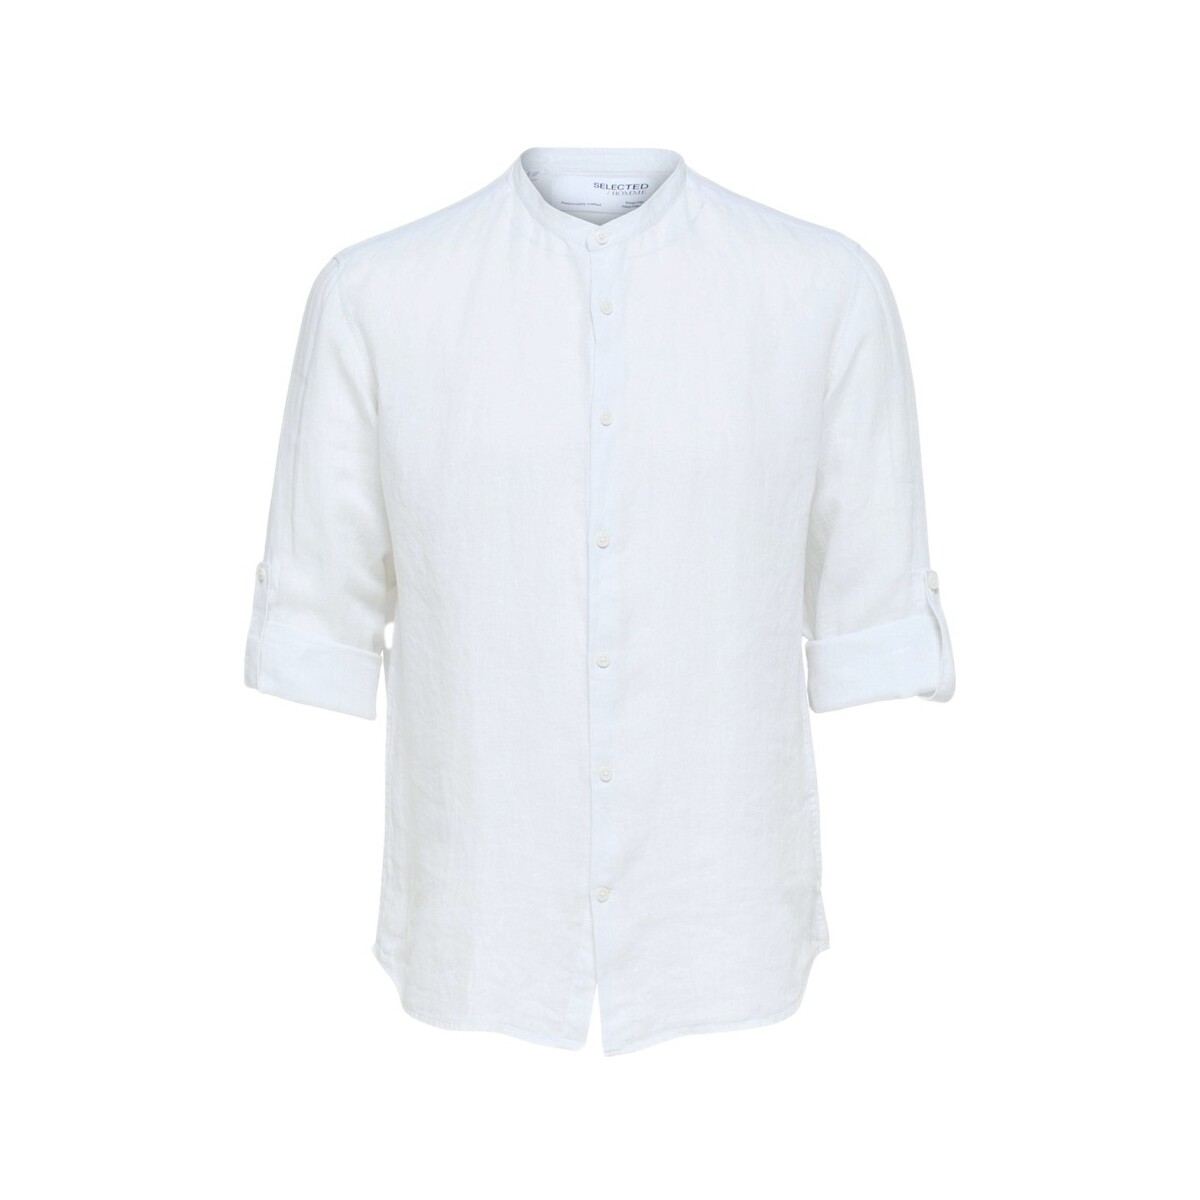 Textil Muži Košile s dlouhymi rukávy Selected Regkylian-Linen - Bright White Bílá